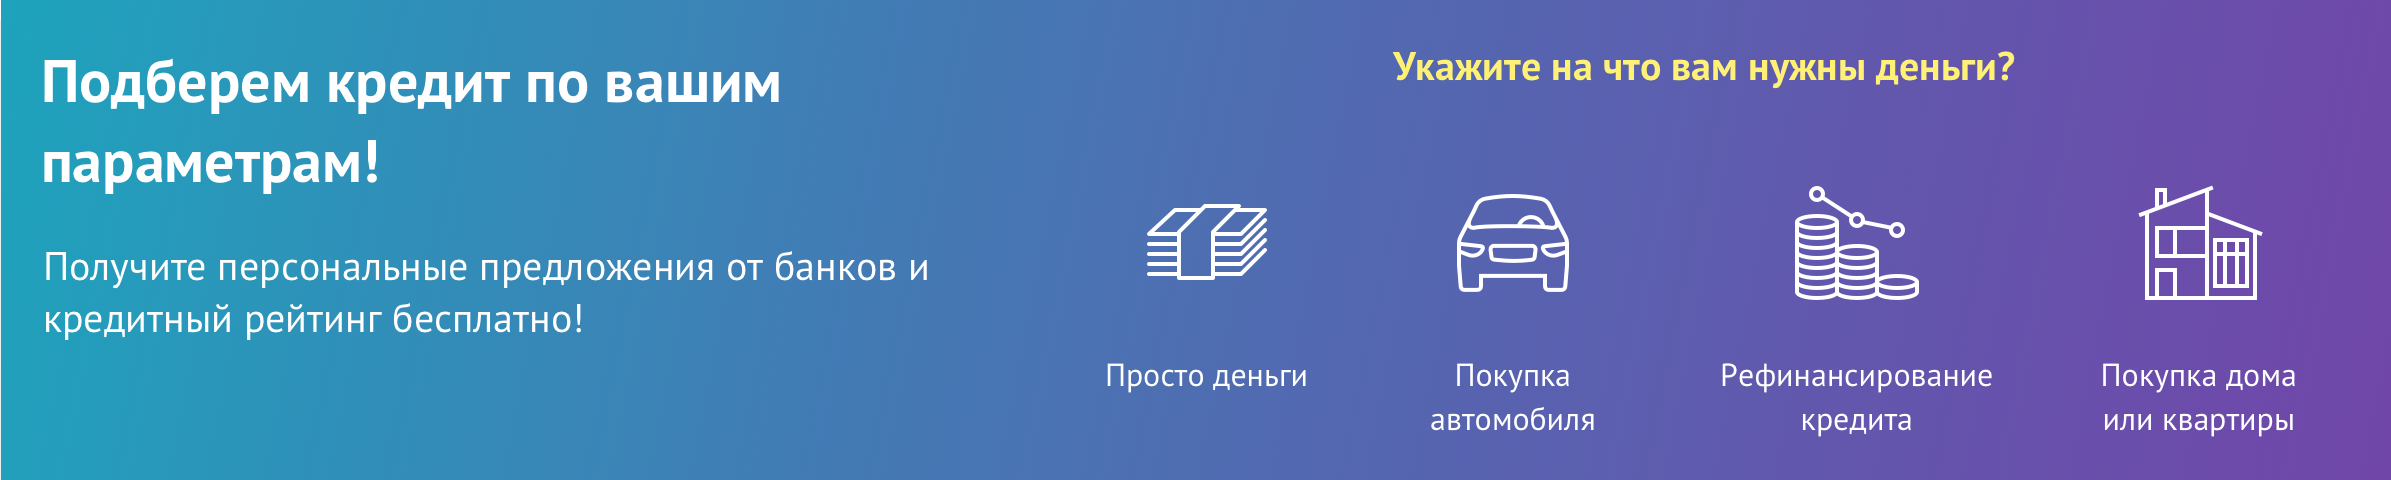 оформить кредит онлайн днепропетровск